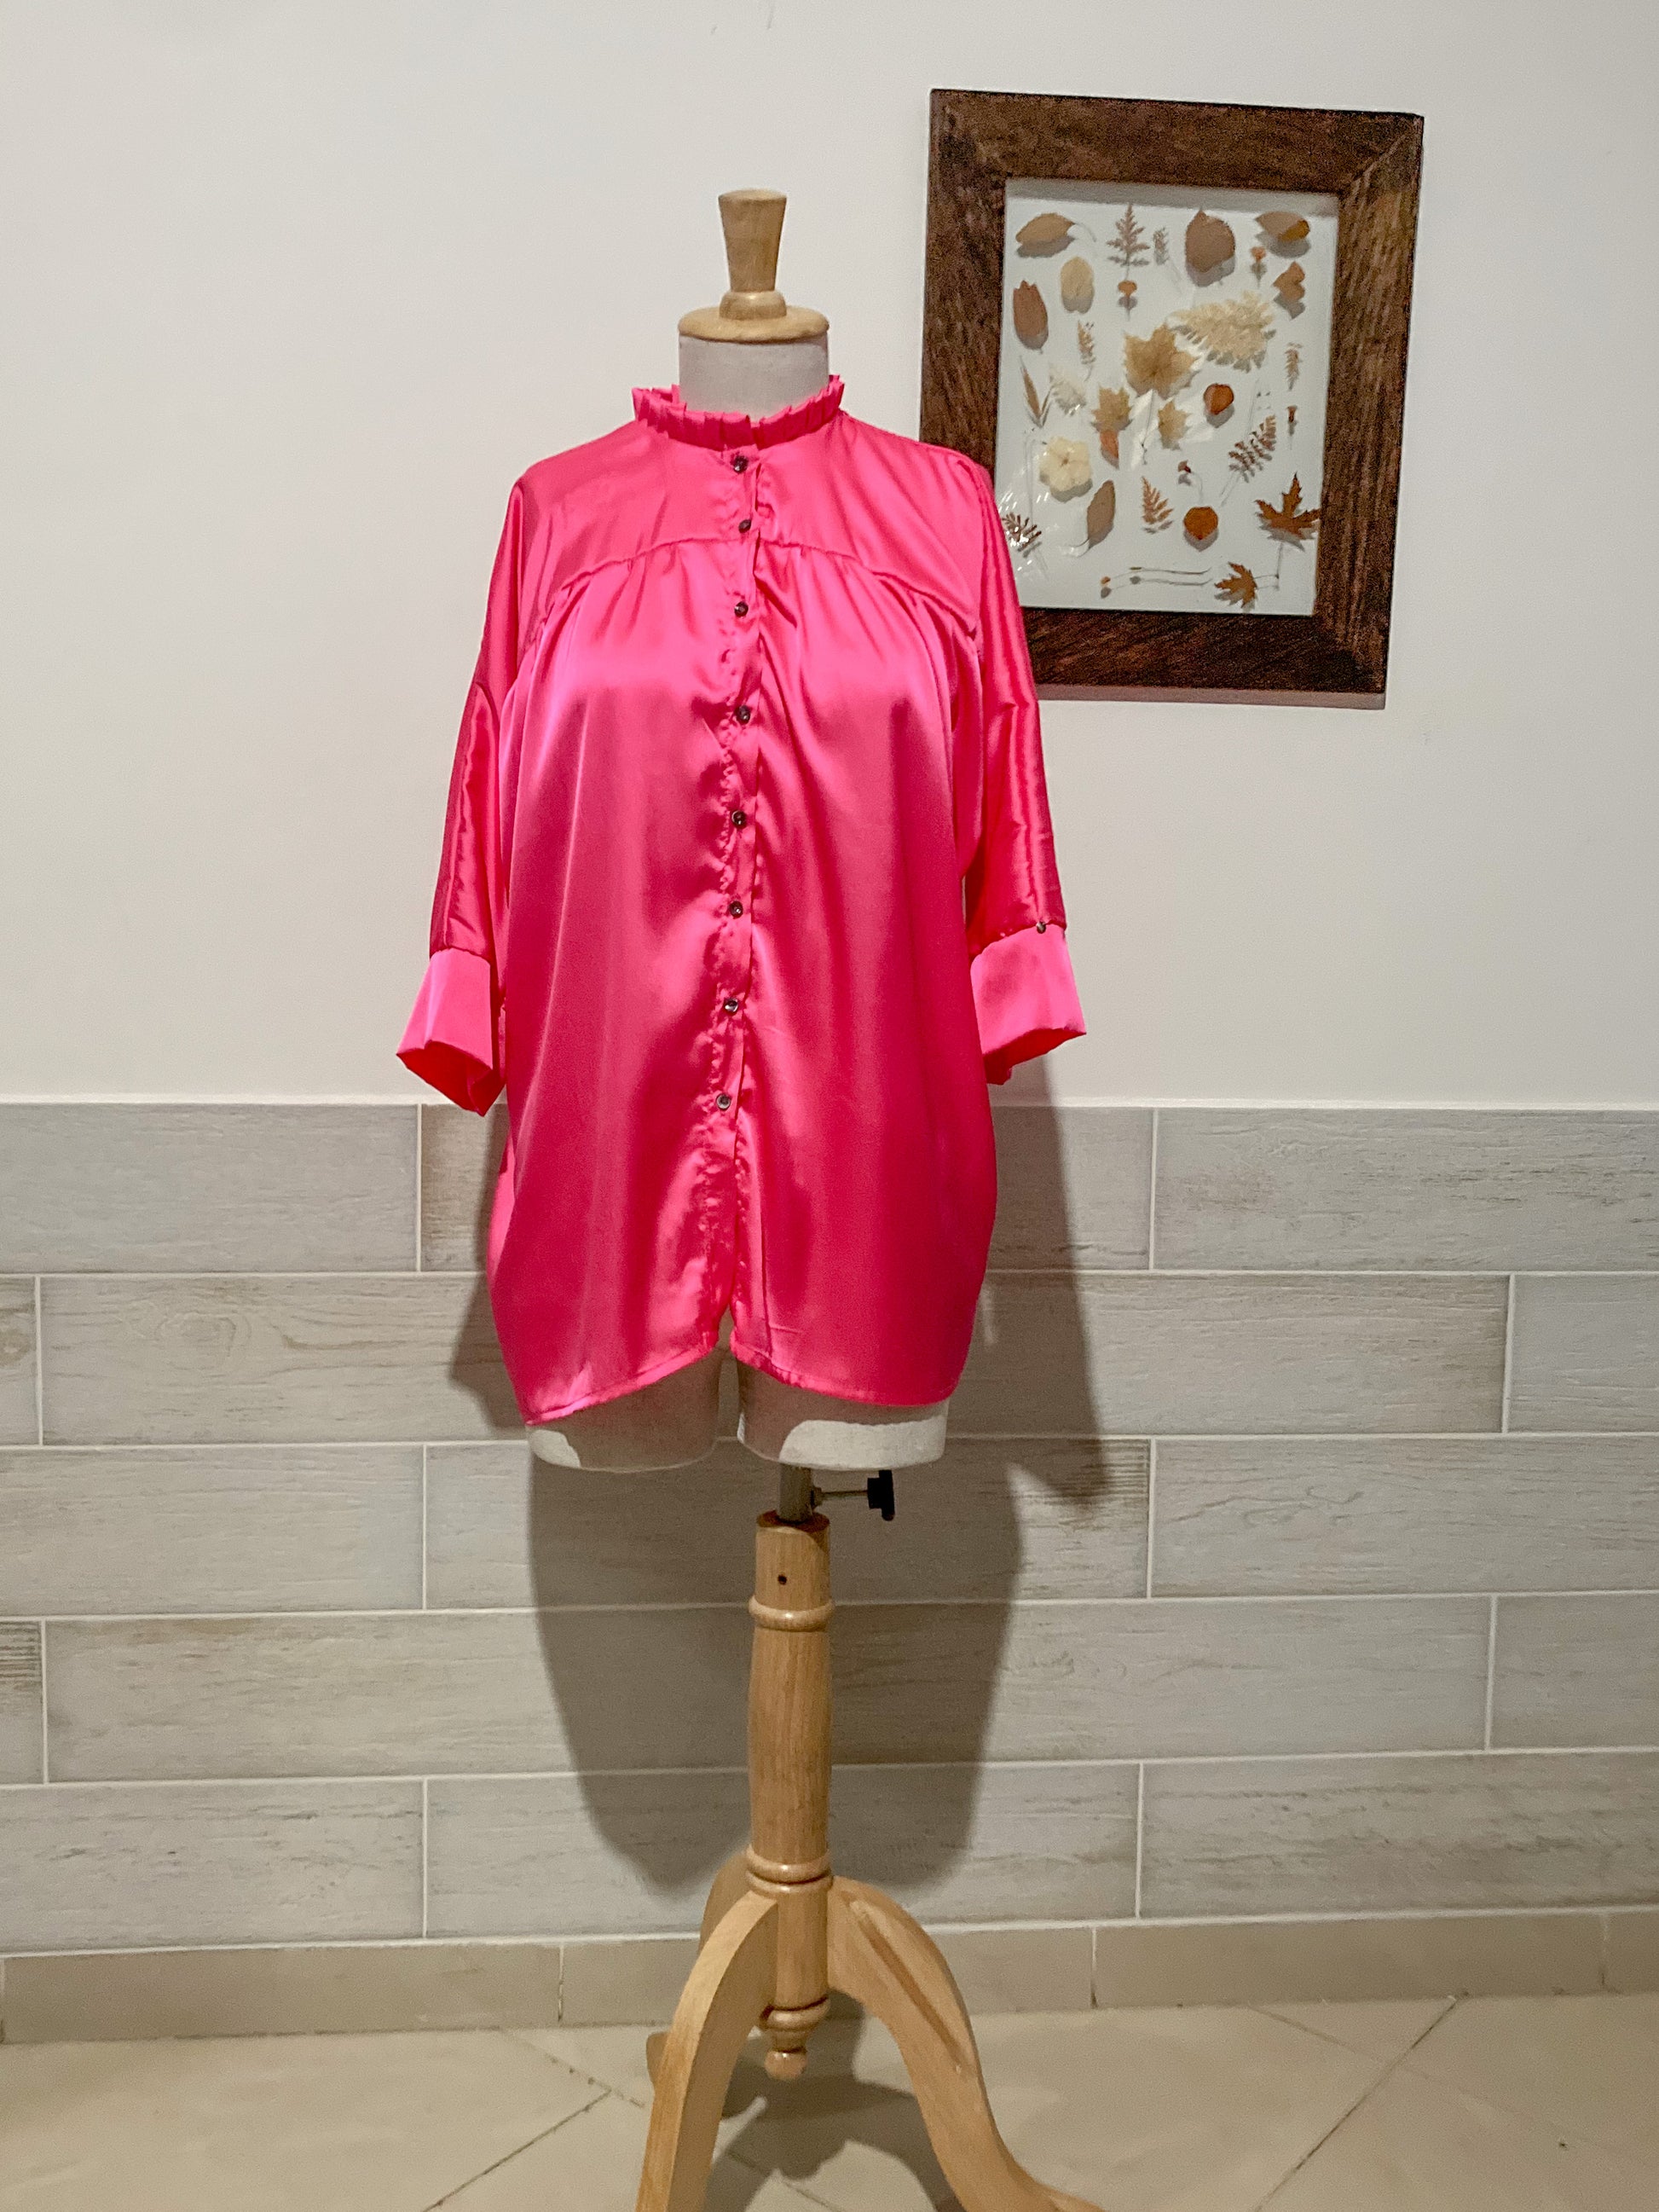  Camisa holgada para para mujer con cuello alto con bolero, botónes y manga japonesa tres cuartos con puño. hecho en tela; 100% Colombiana. Fucsia satinado